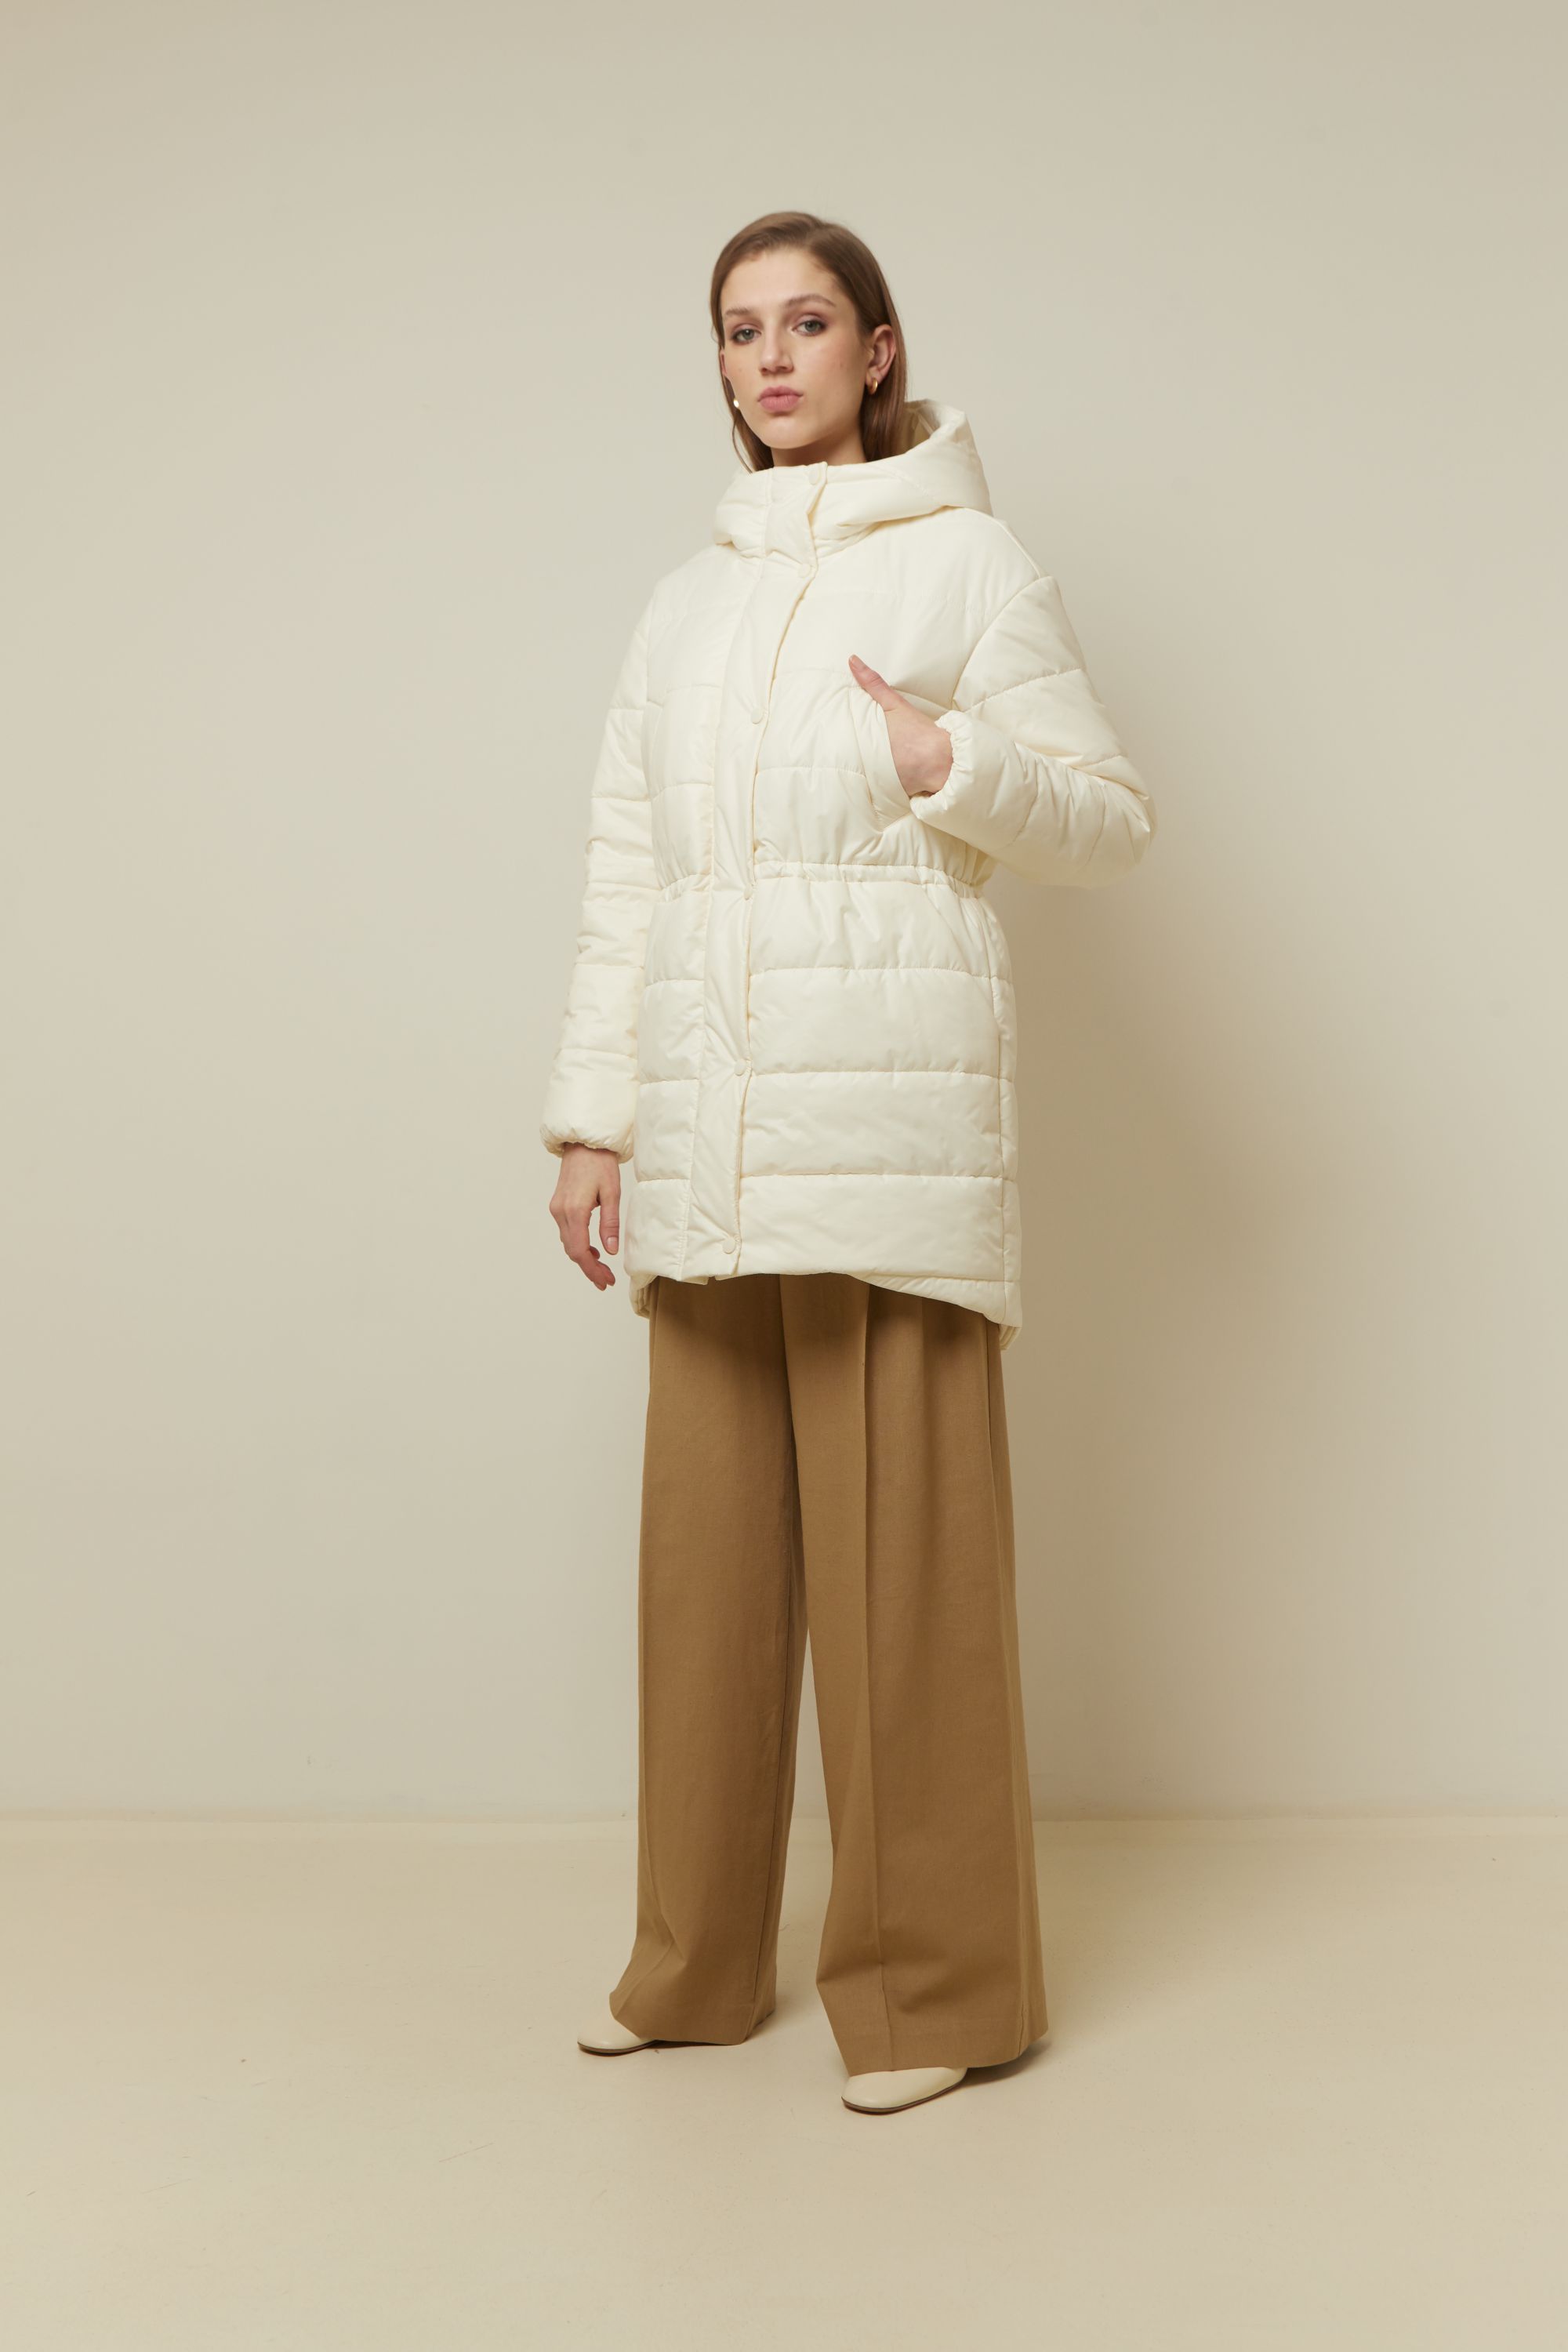 Пальто женское плащевое утепленное 5-13121-1. Фото 2.